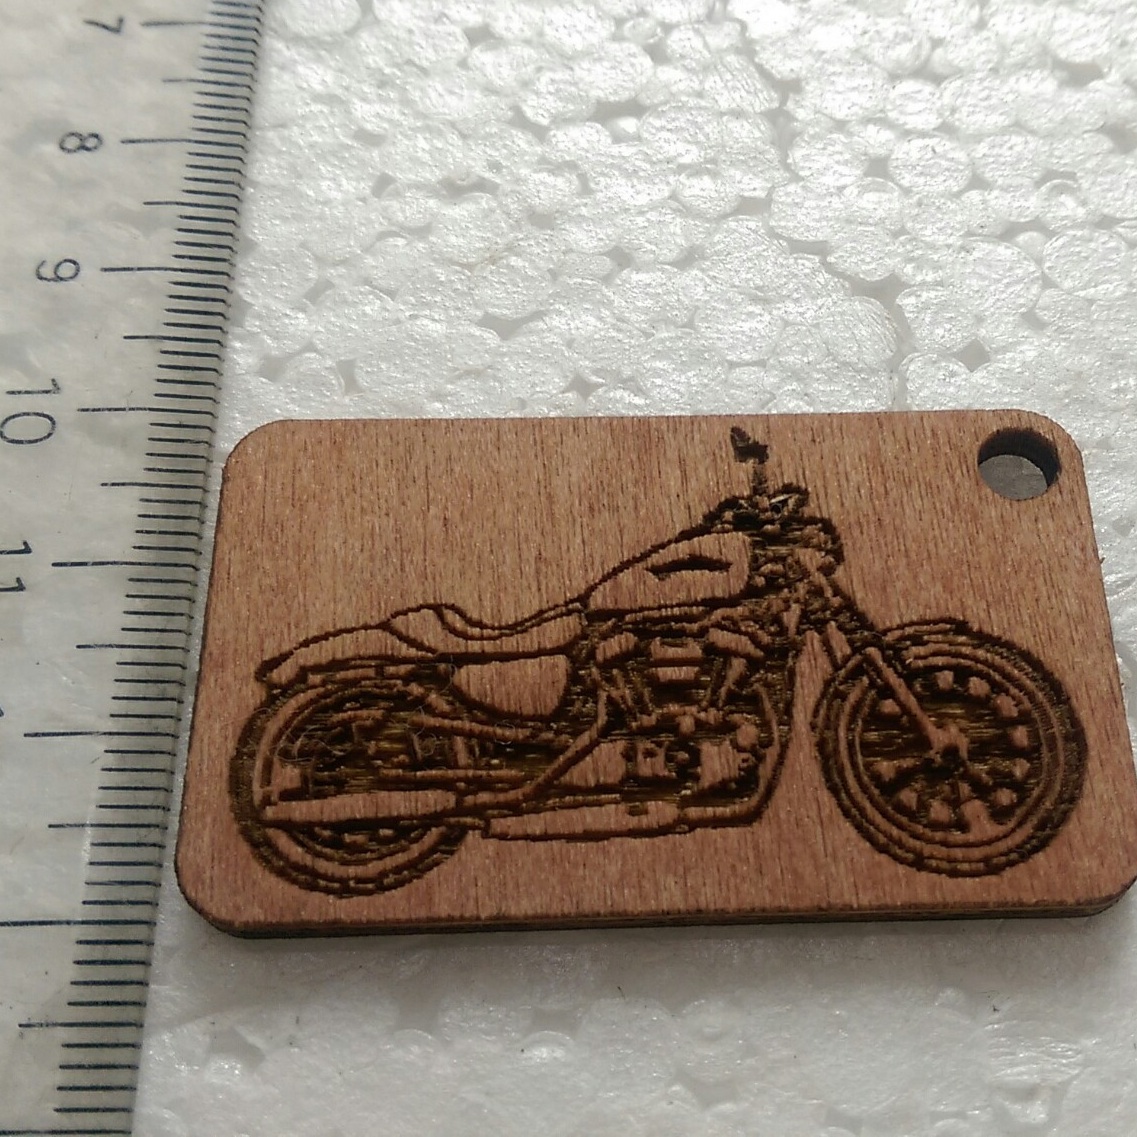 Móc khóa khắc hình Harley-Davidson  883  